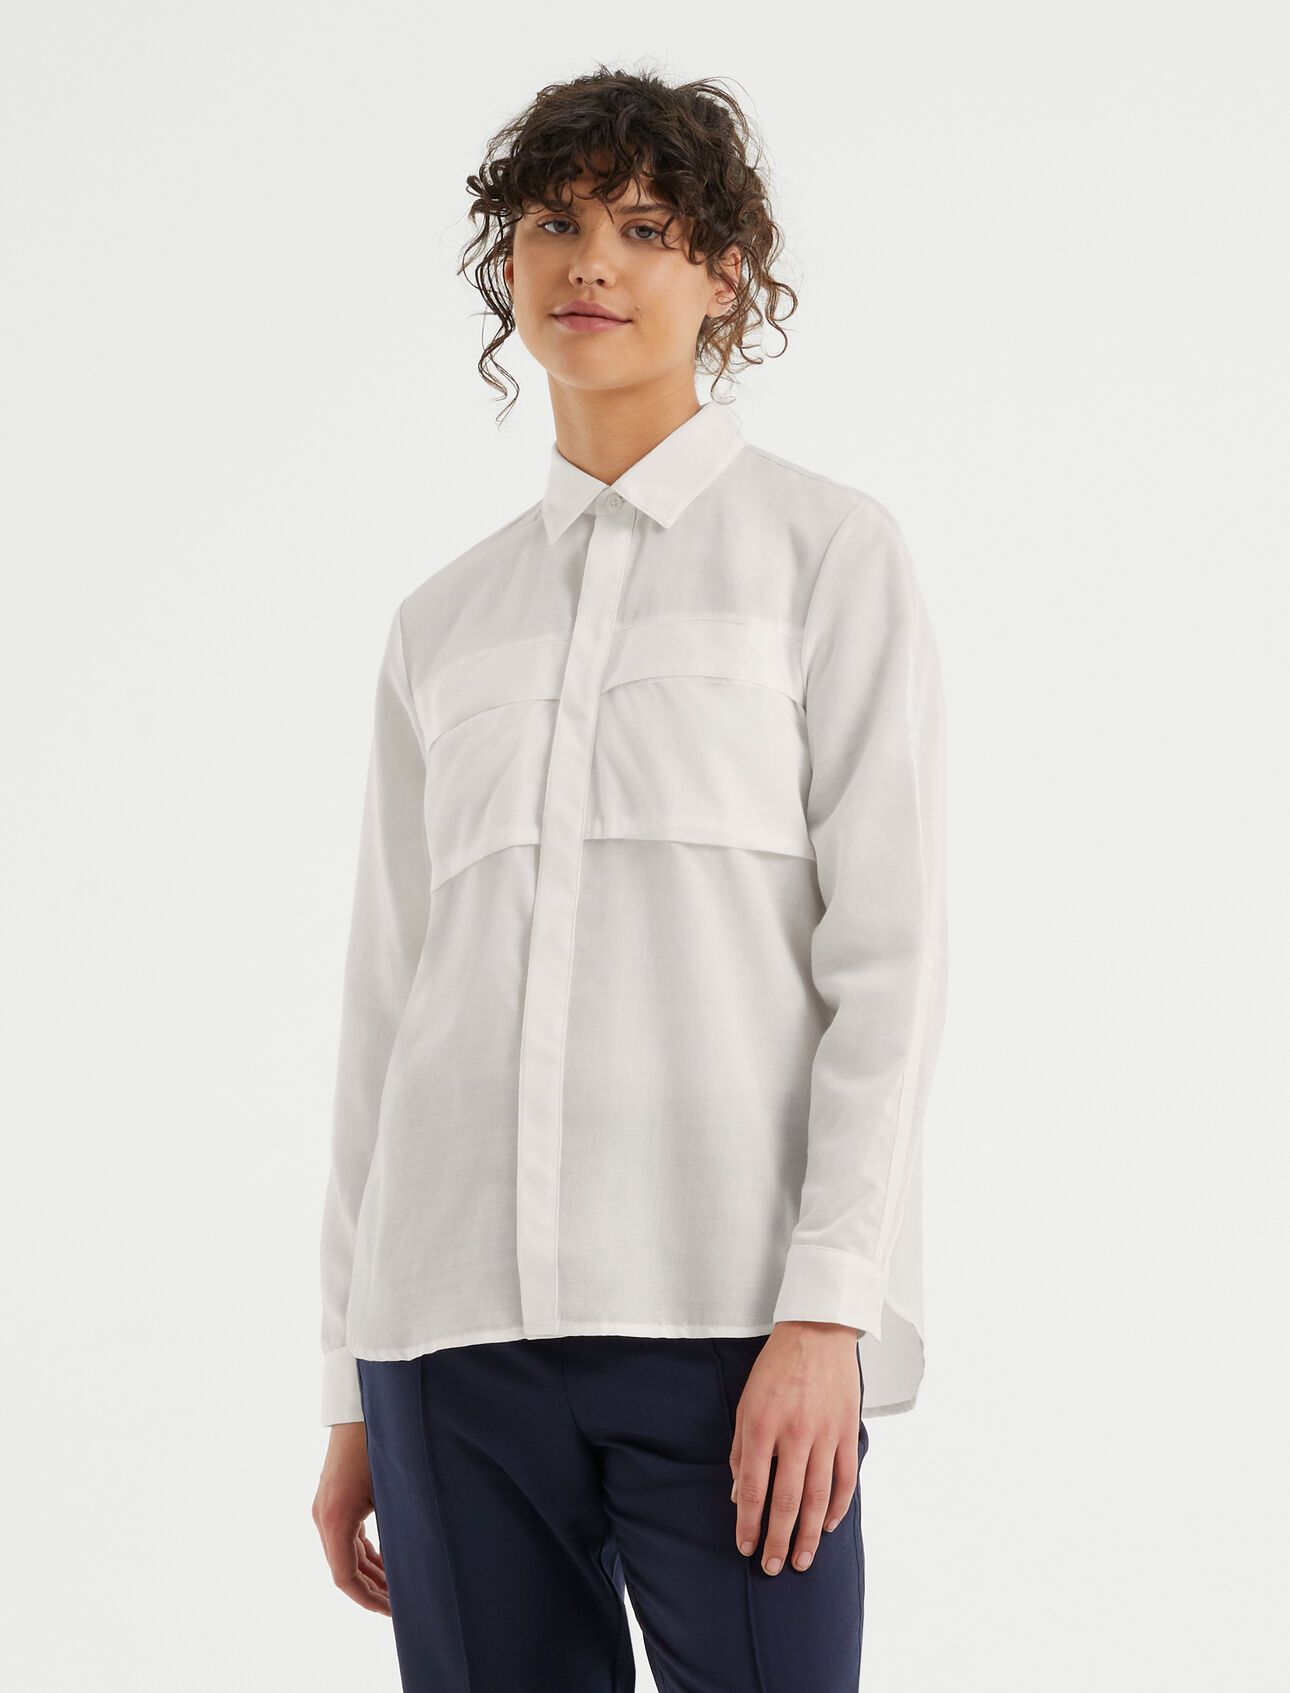 Dam Natural Blend överskjorta i merino  Merino Natural Blend överskjorta är en ultralätt skjorta som är tillverkad av vårt vävda Cool-Lite™-material. Skjortan har en blandning av merinoull och TENCEL™ som ger en elegant och bekväm design.